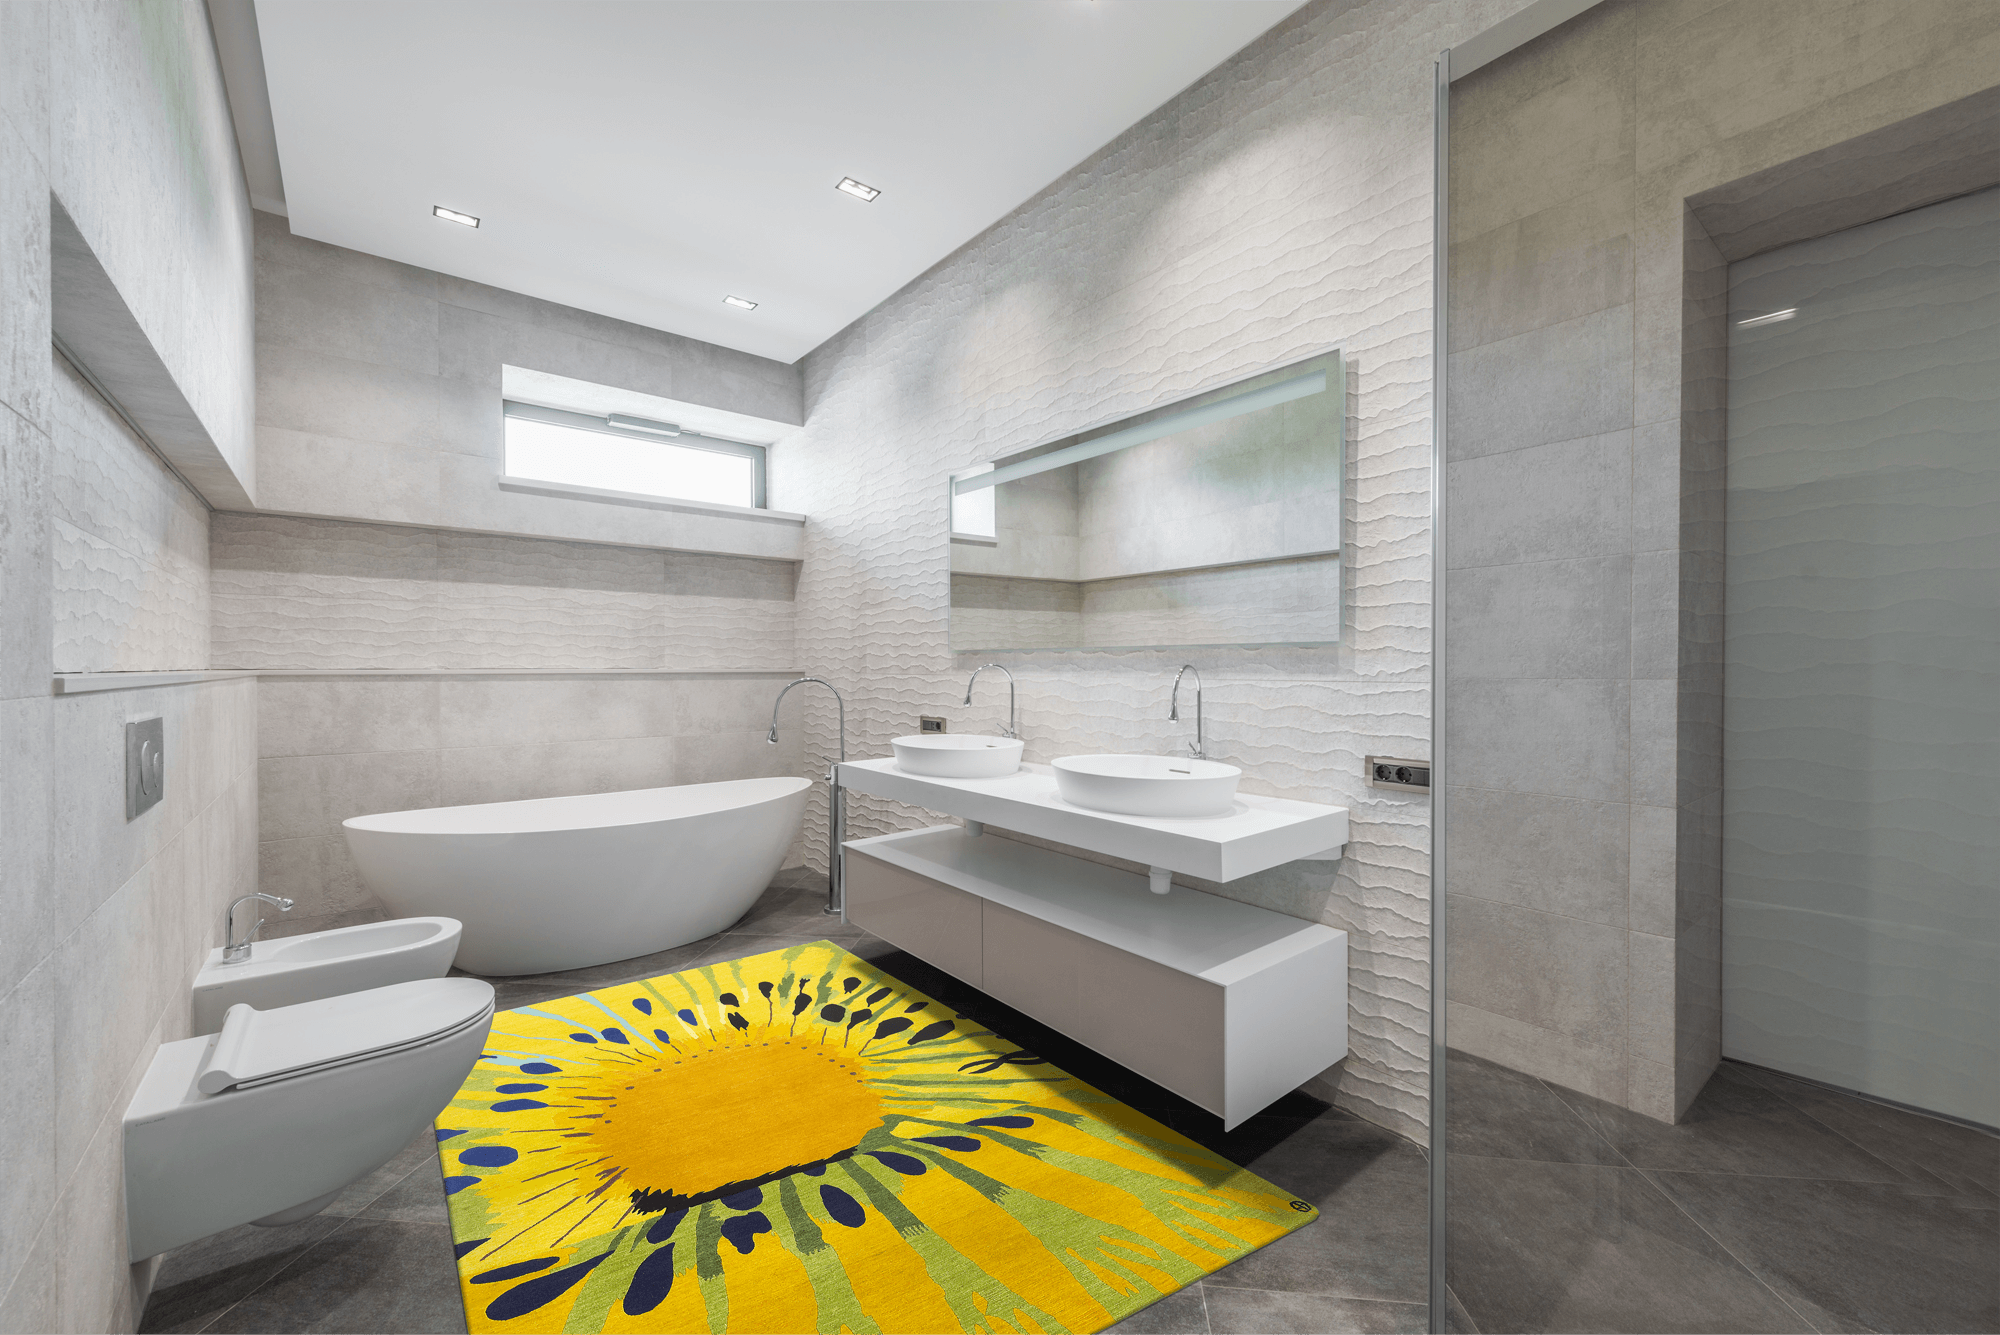 Modernes Badezimmer mit Geba Teppich "Kiwi" in frischen Farben - Geba Teppich